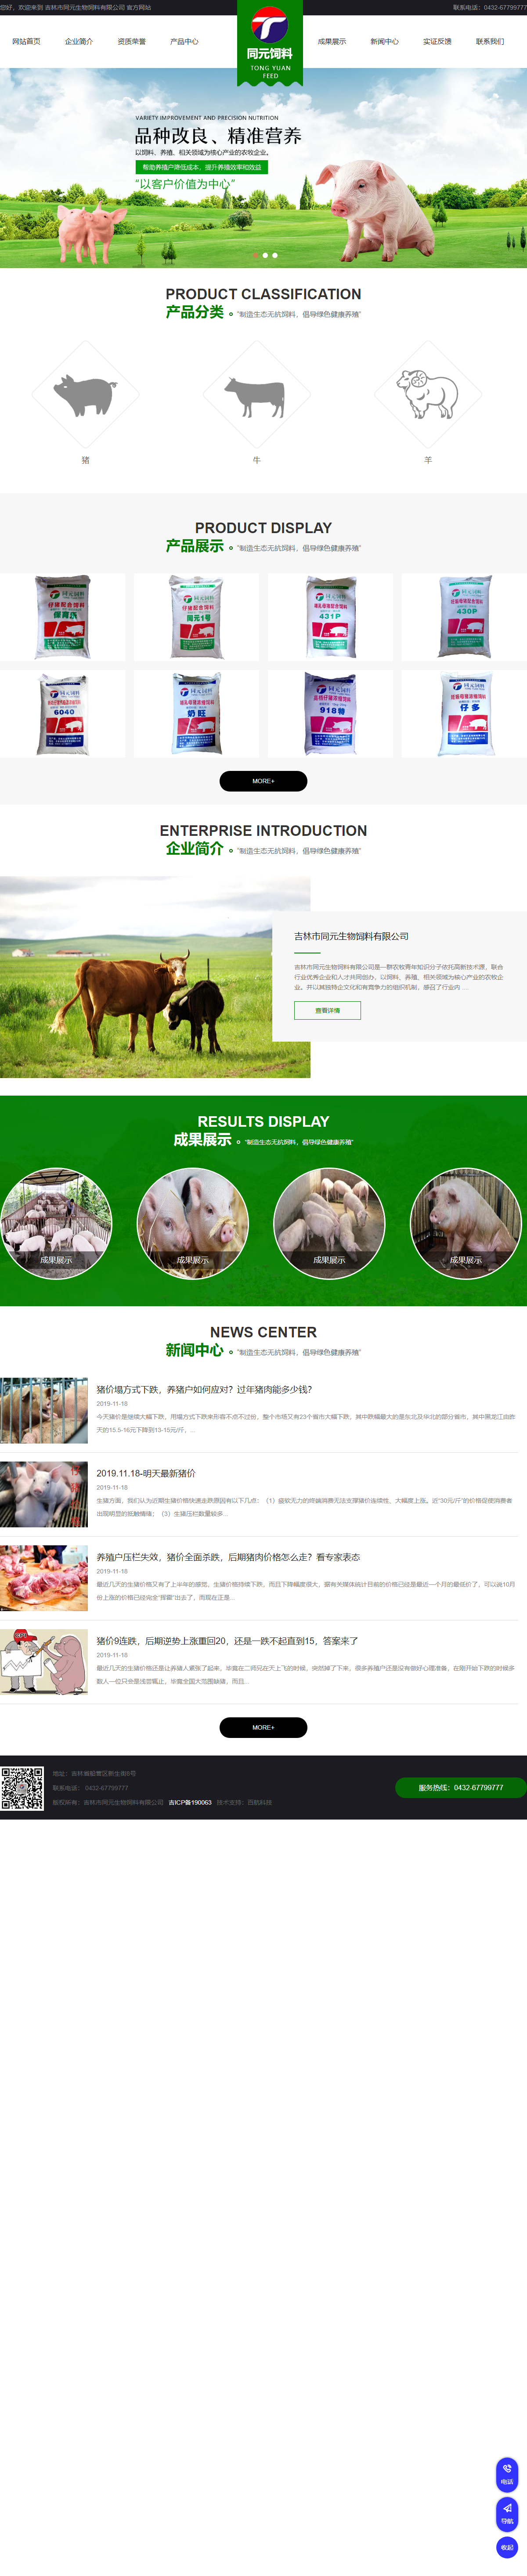 吉林市同元生物饲料有限公司网站案例